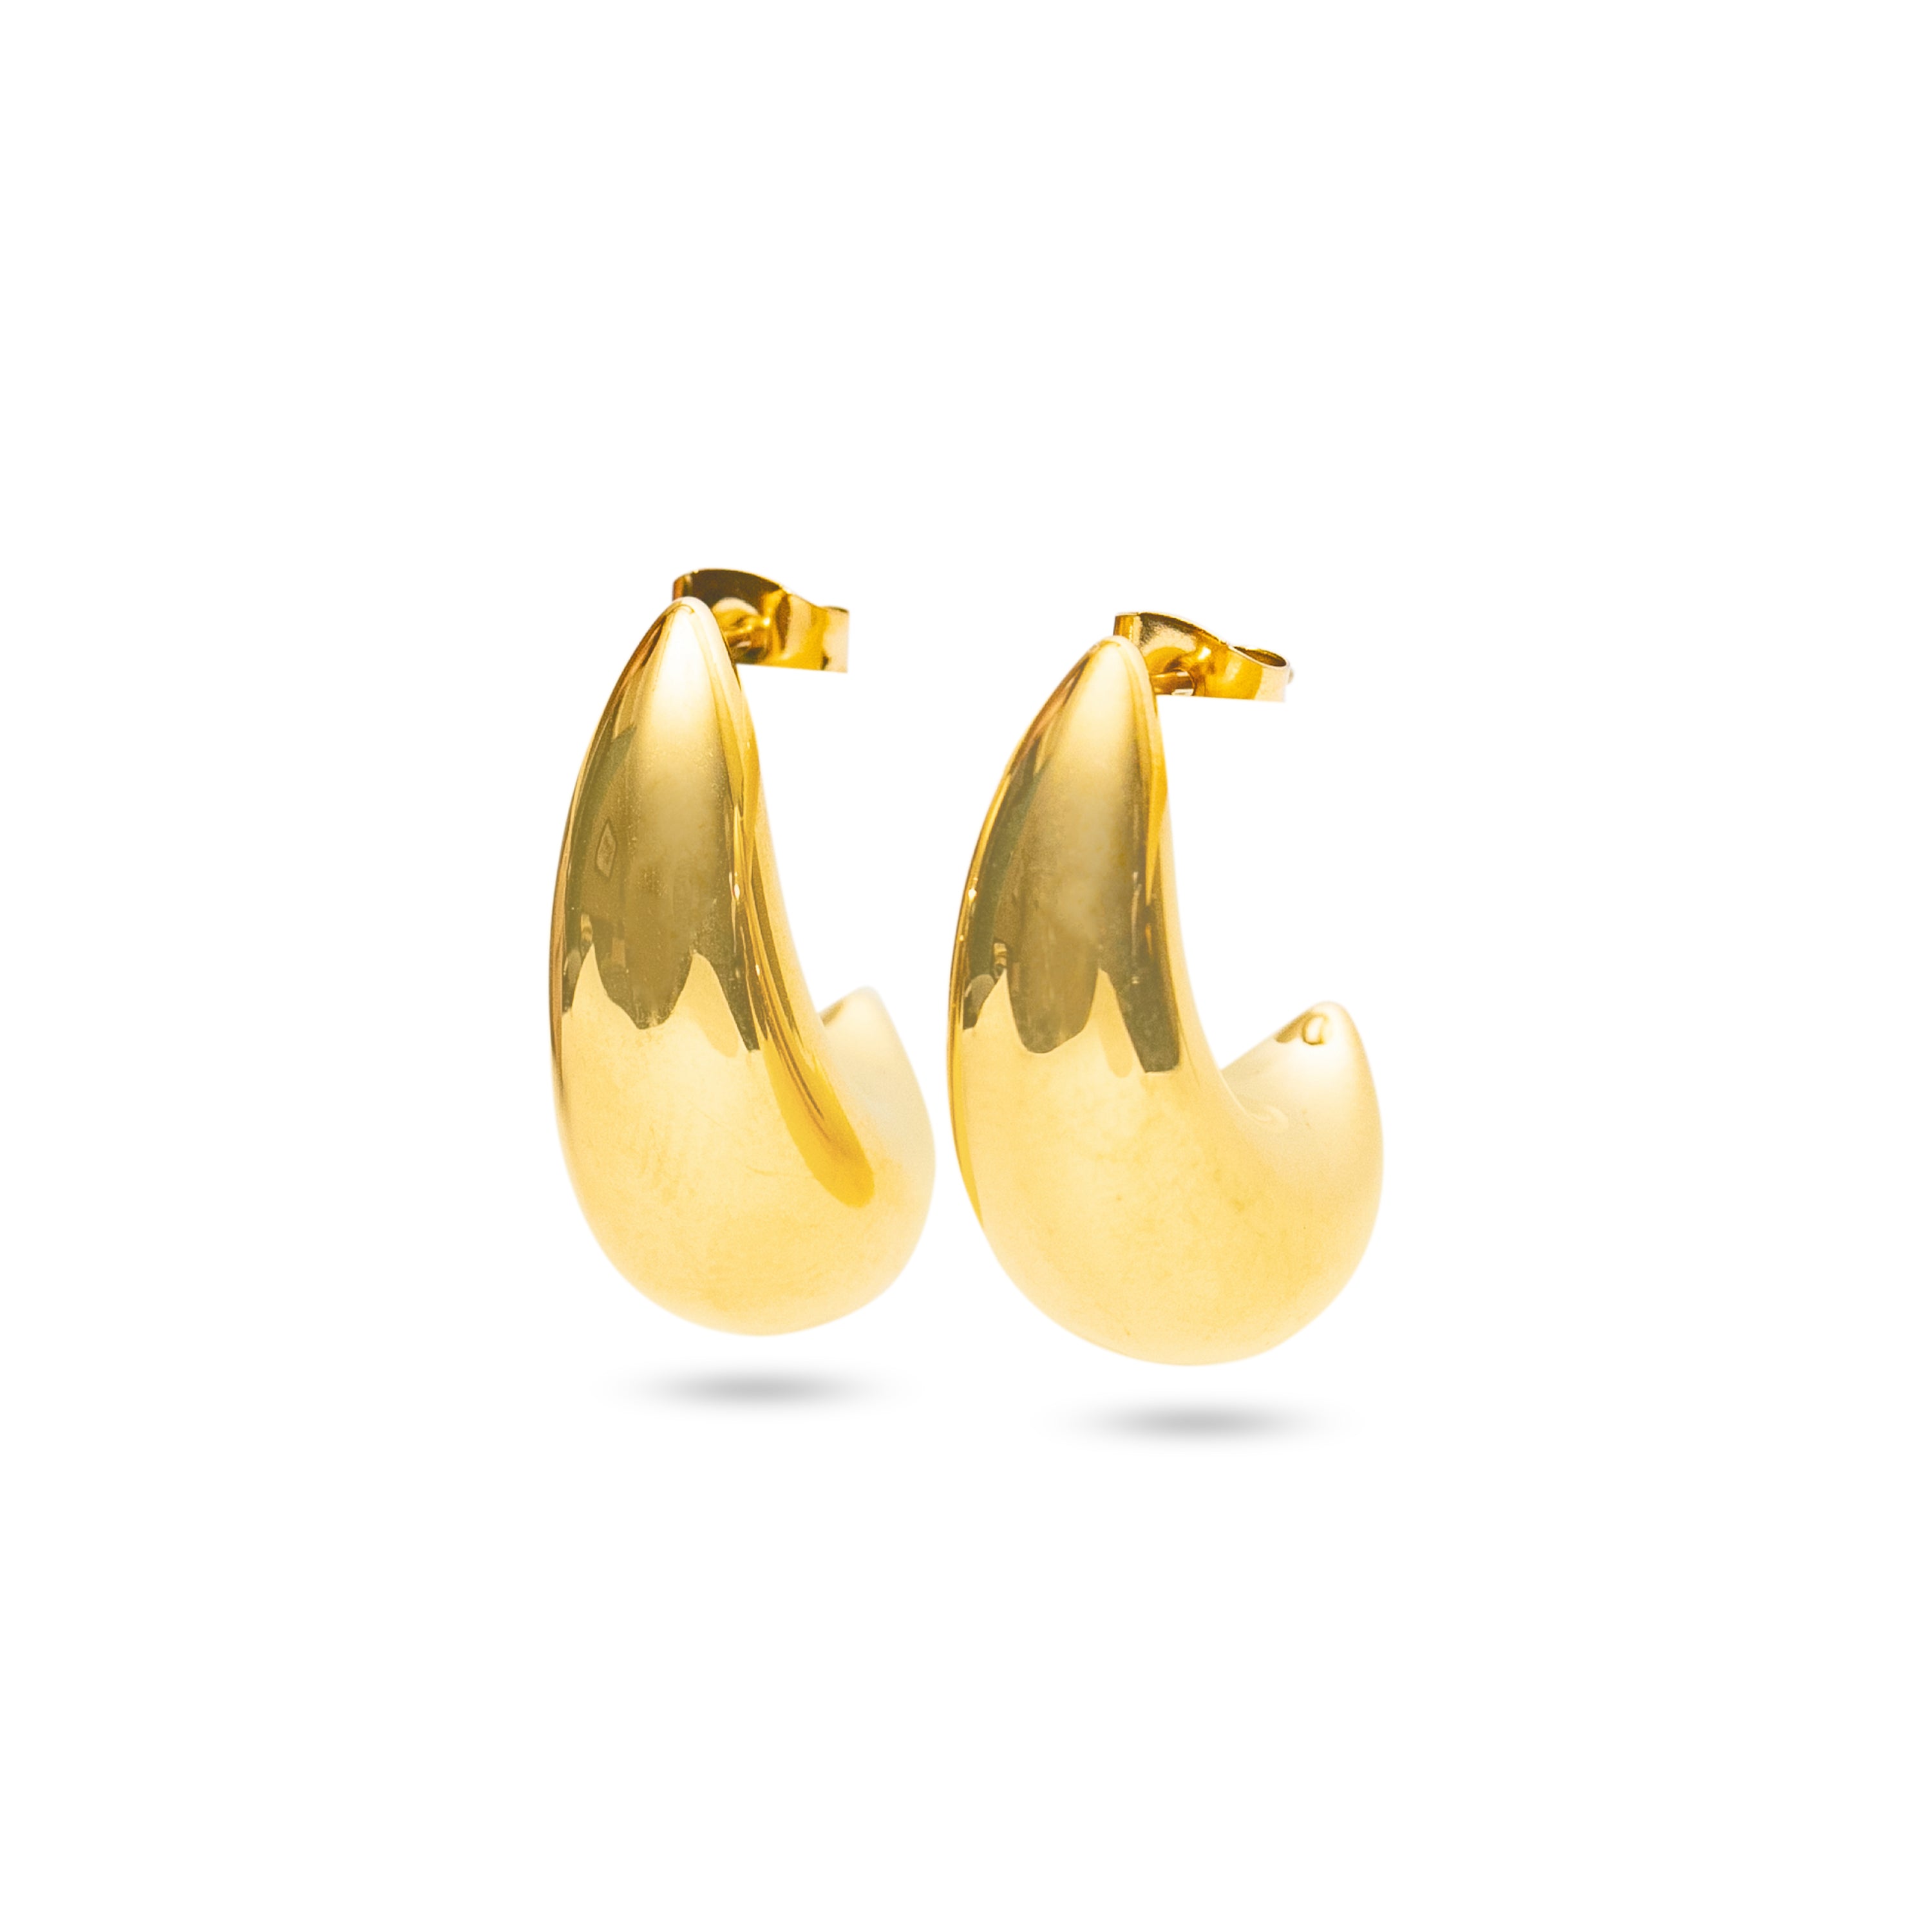 Stainless Steel Gold Tone Stud Hoop Earrings